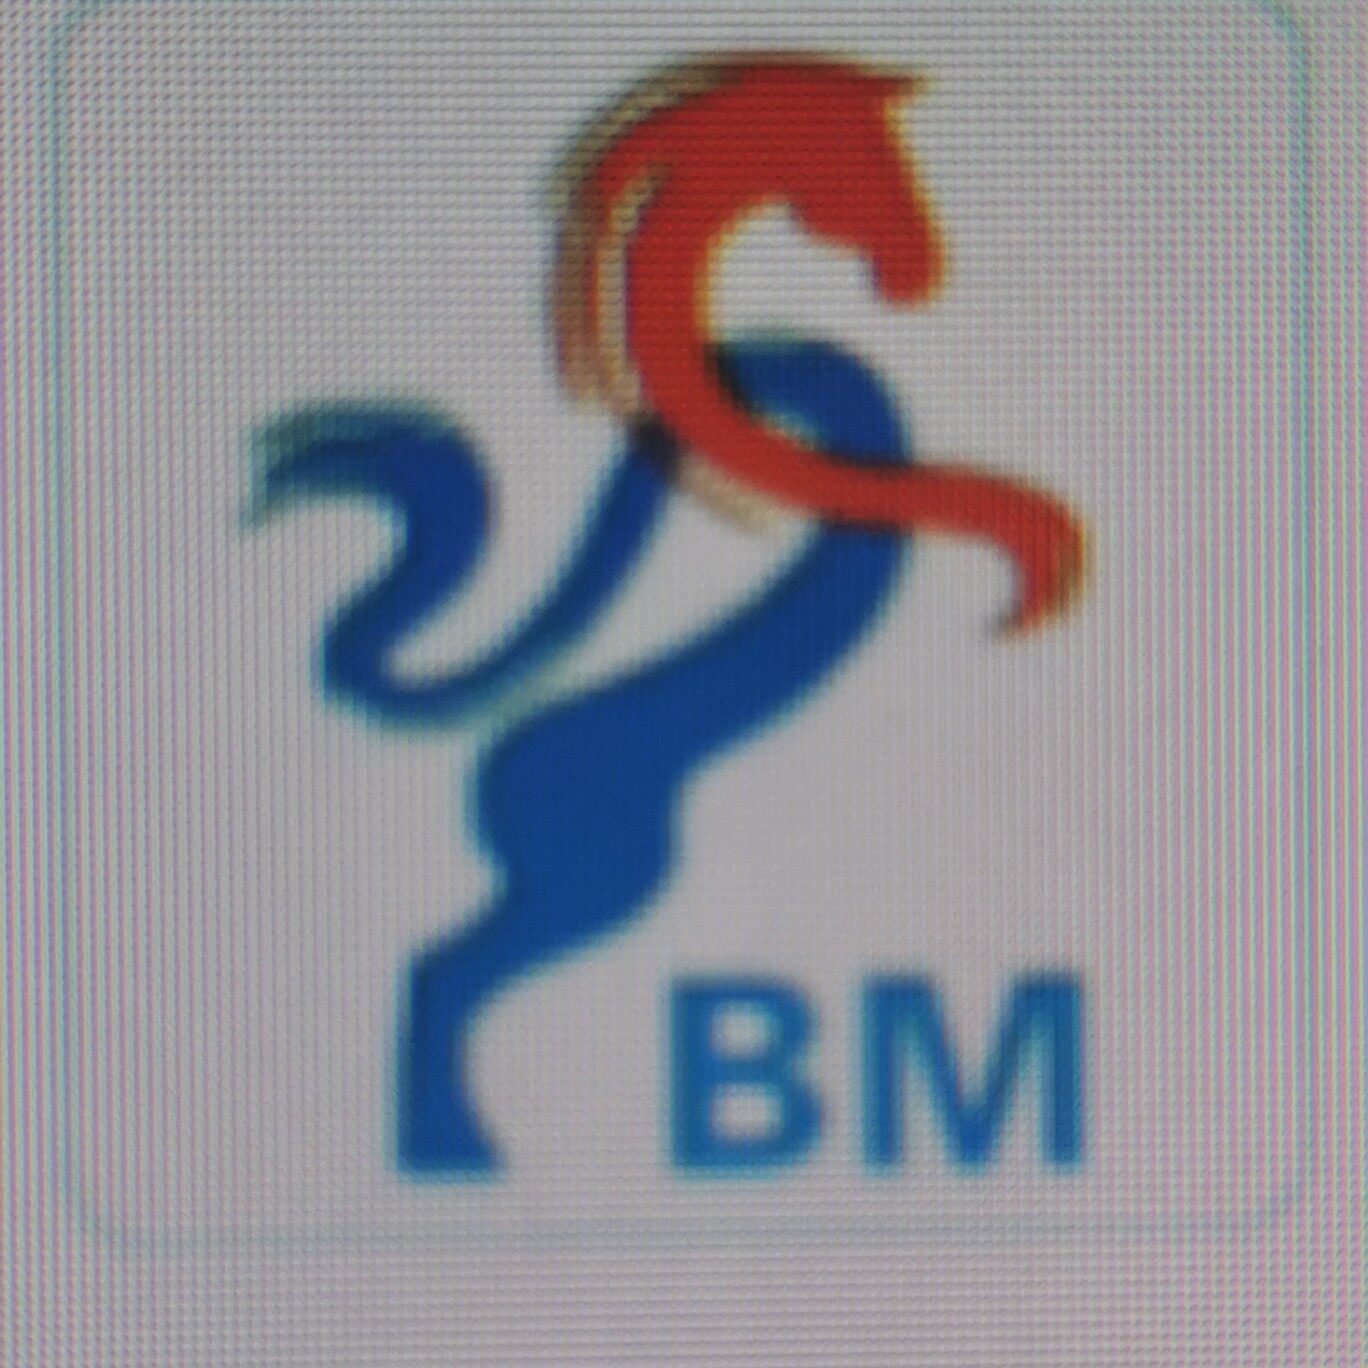 晋江市博马汽车贸易有限公司logo